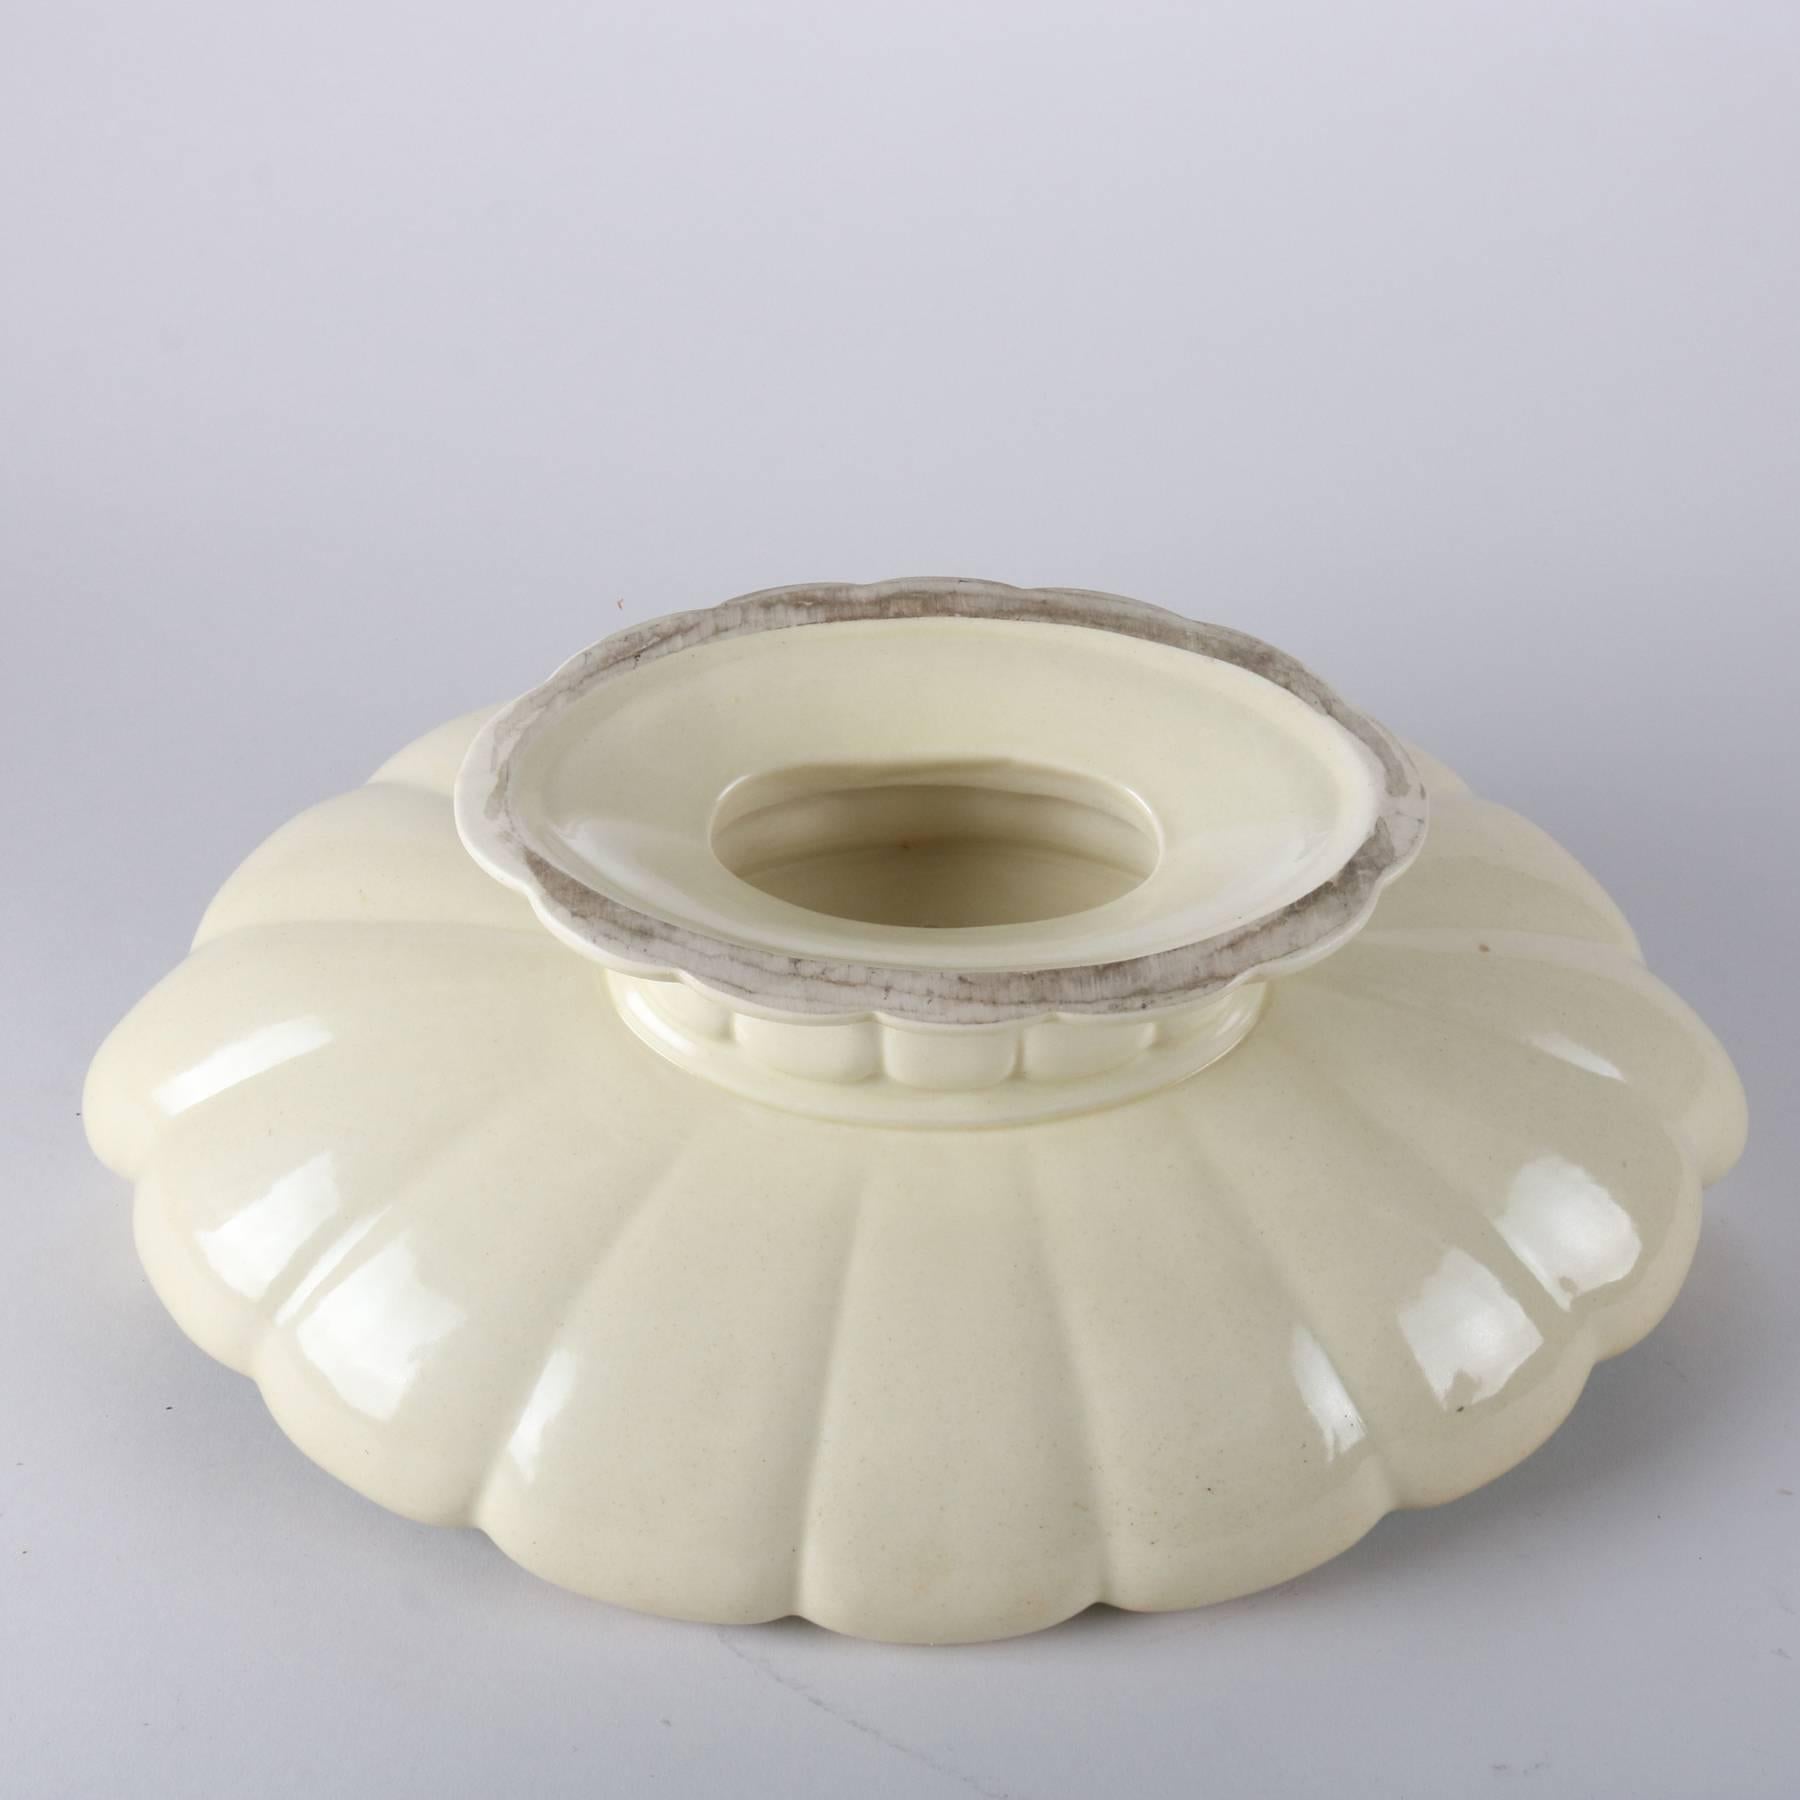 Antique Art Nouveau Cowan Art Pottery Scallop Form Pedestal Center Console Bowl 1